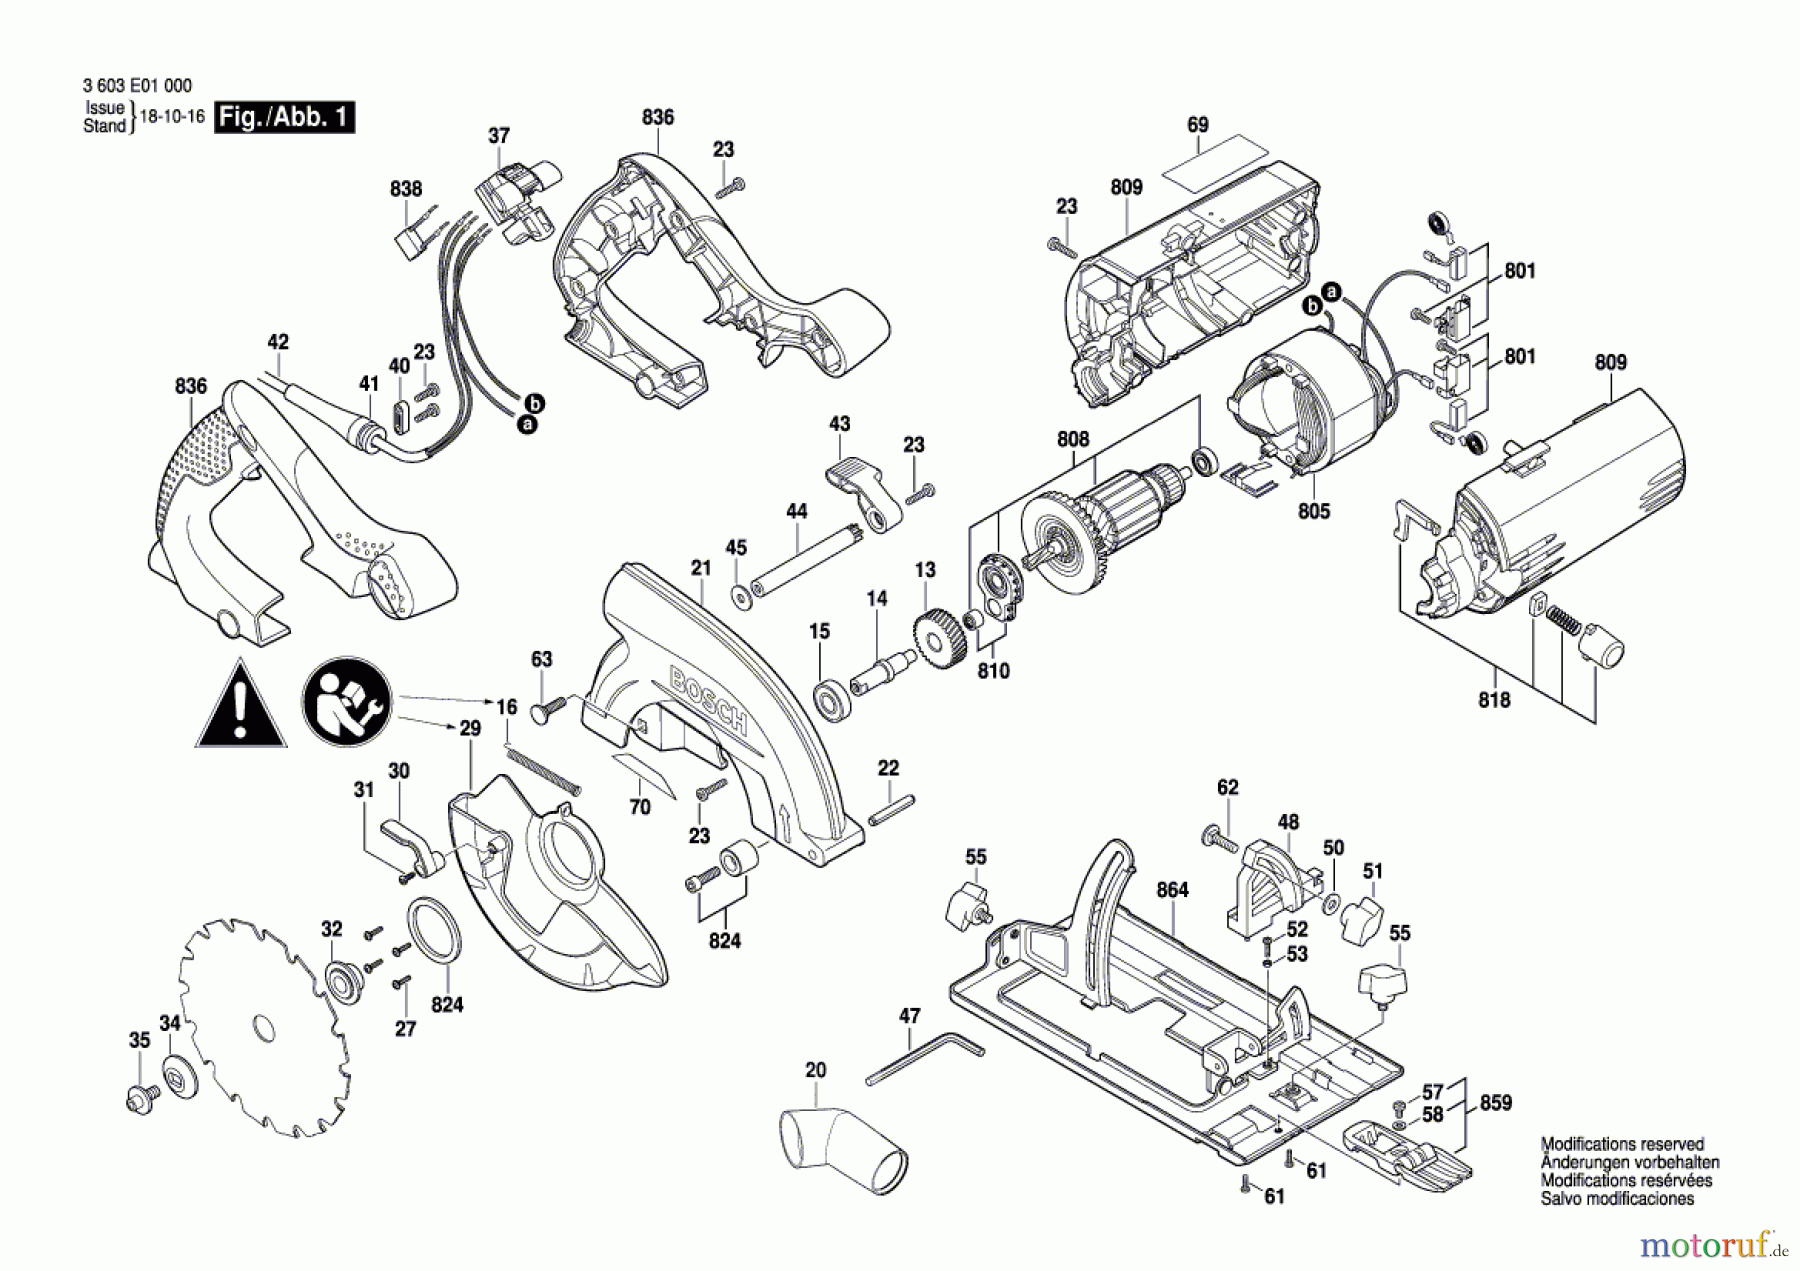  Bosch Werkzeug Handkreissäge PKS 55 A Seite 1